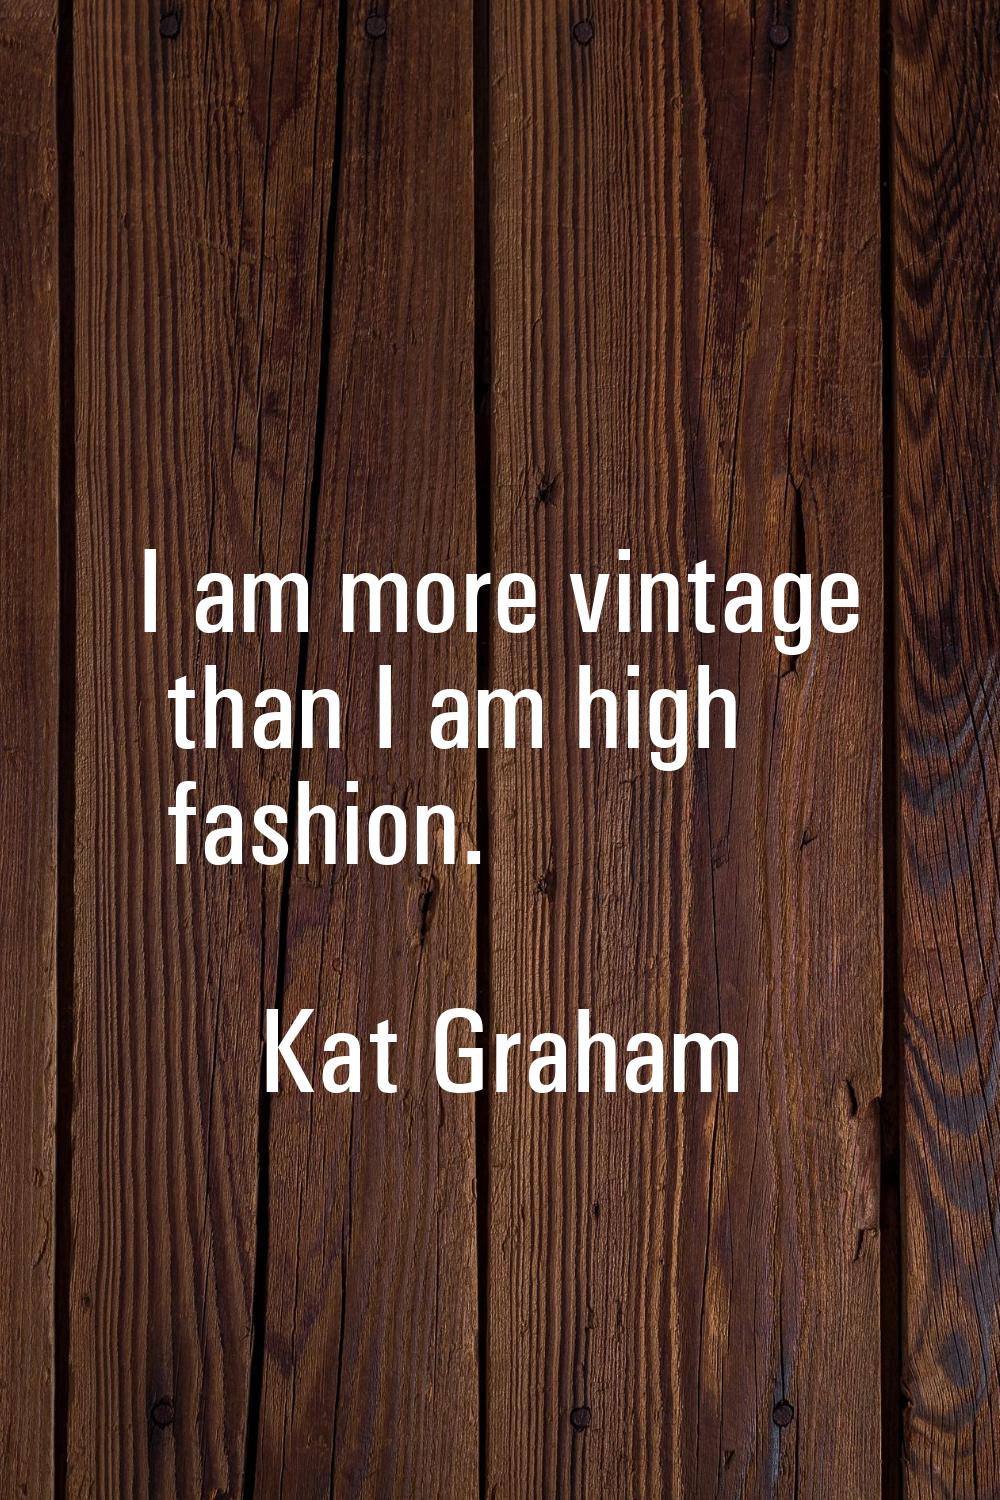 I am more vintage than I am high fashion.